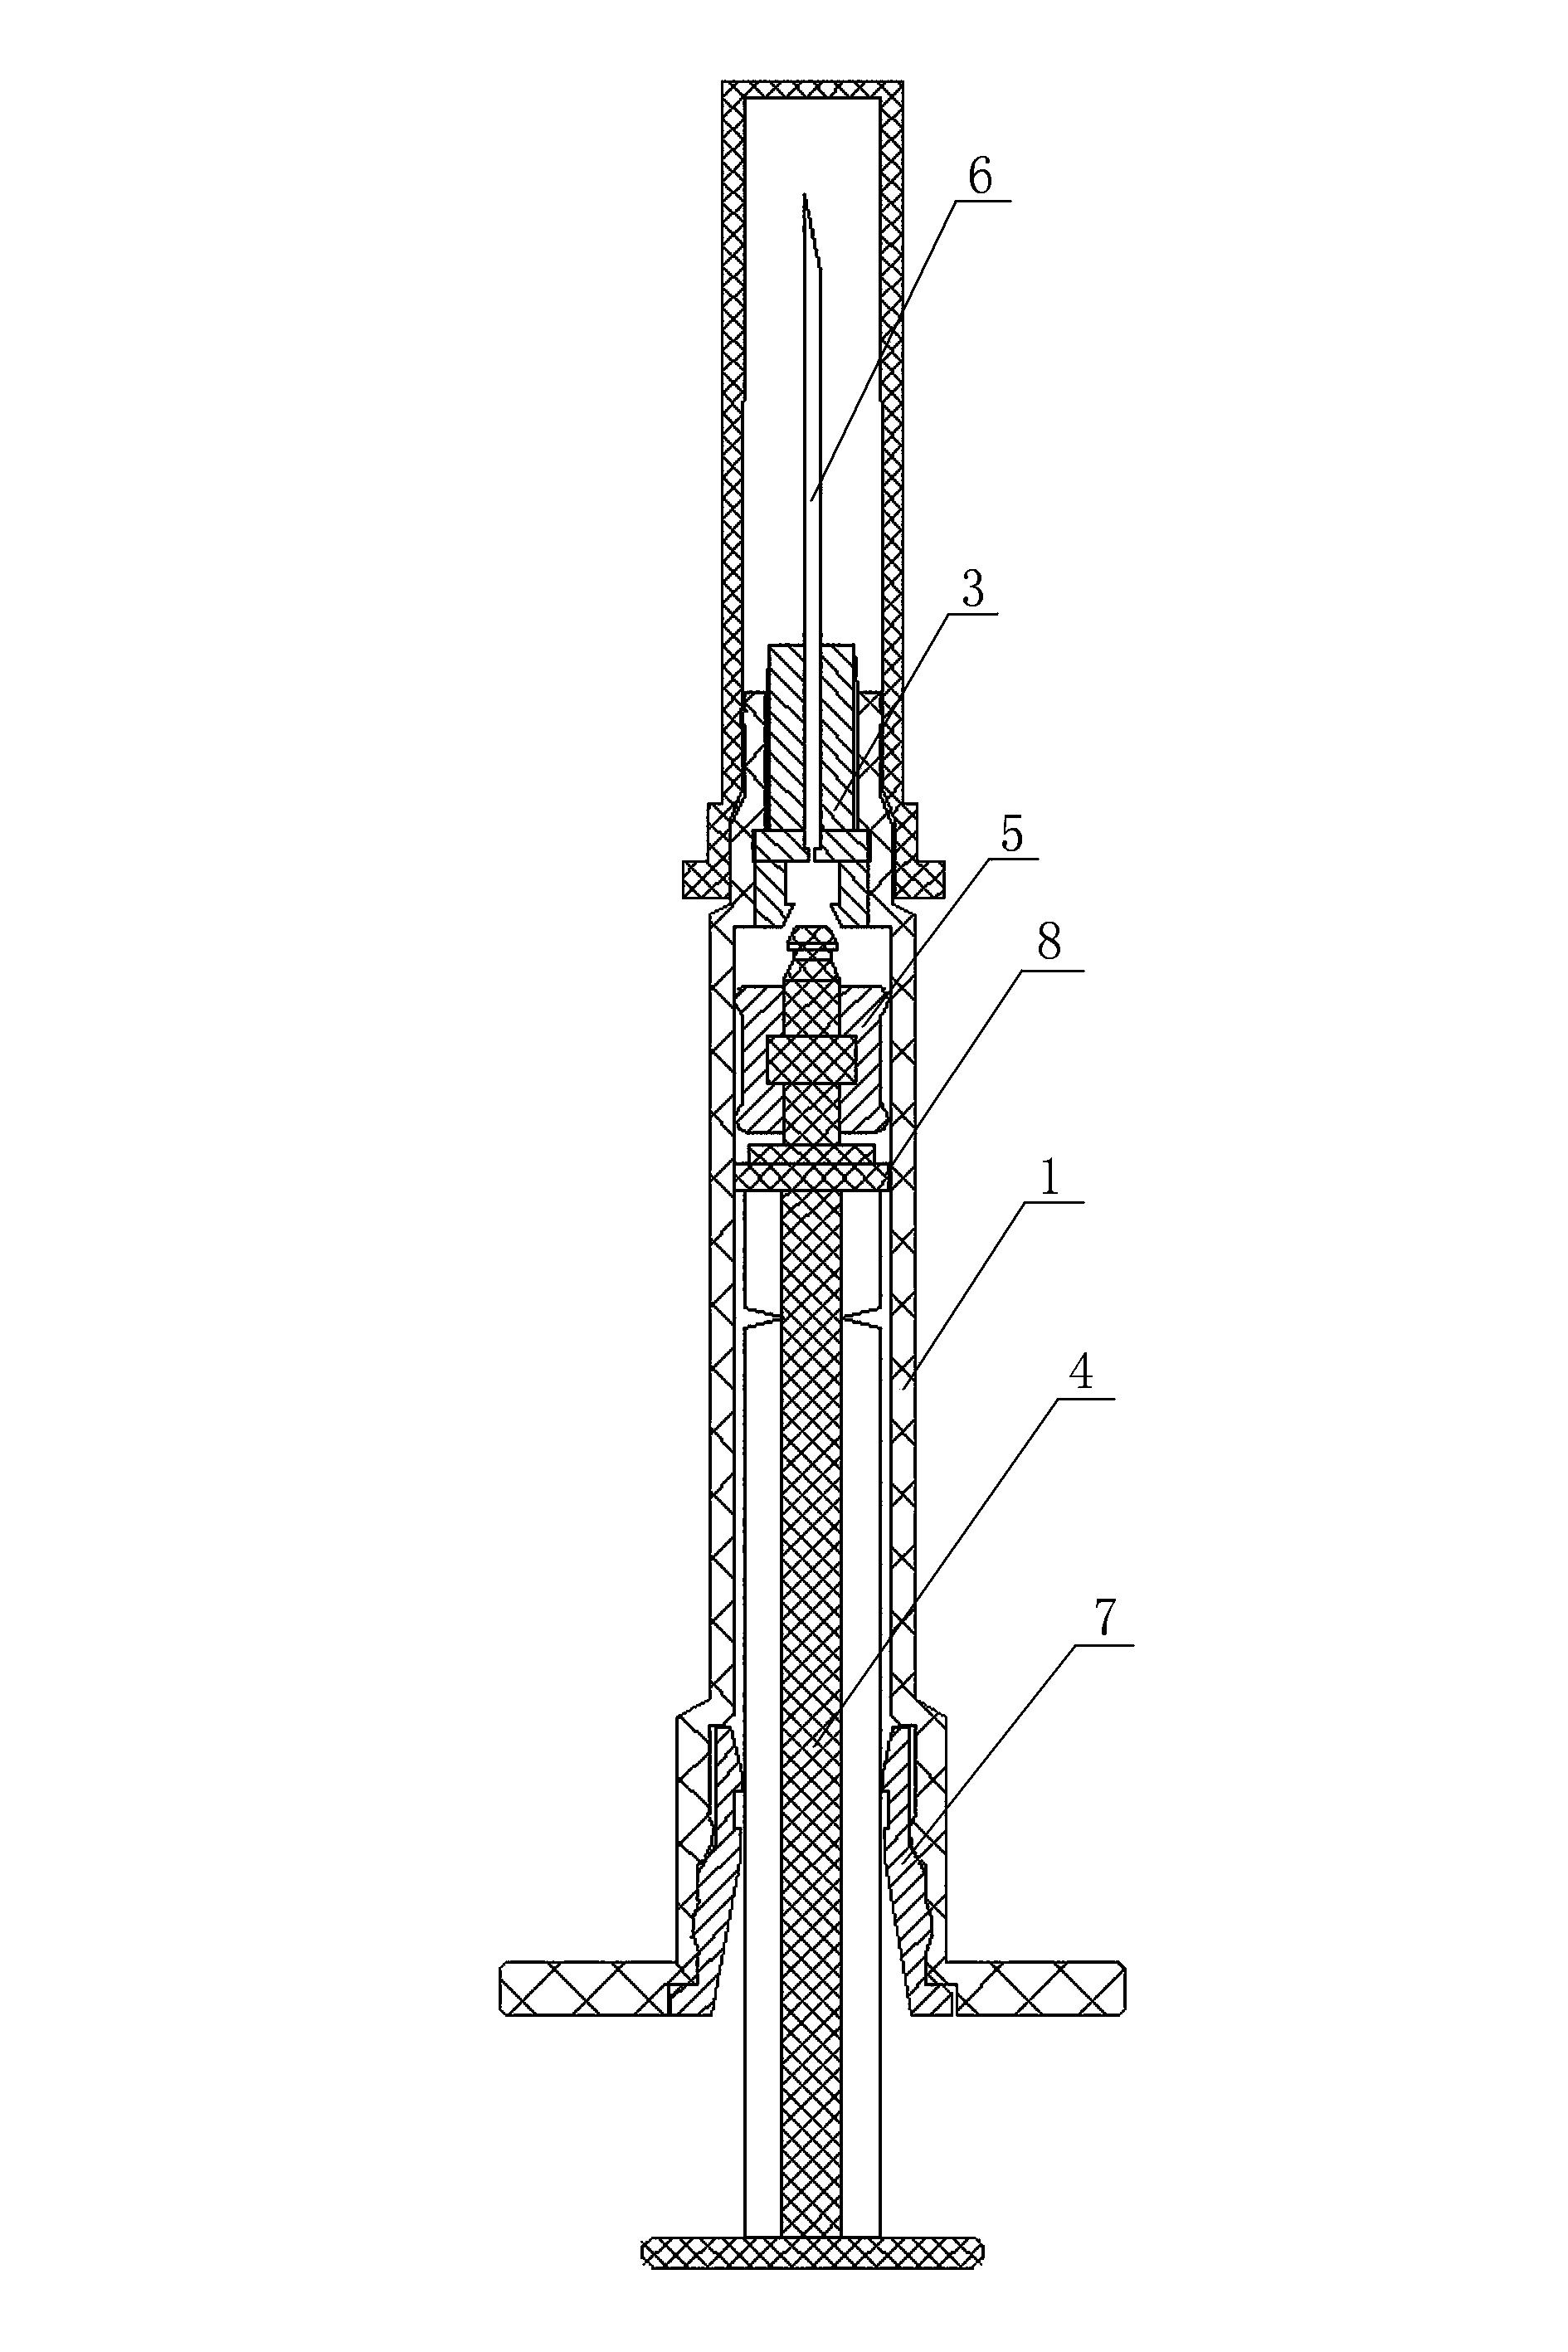 Core rod locking-type safety syringe